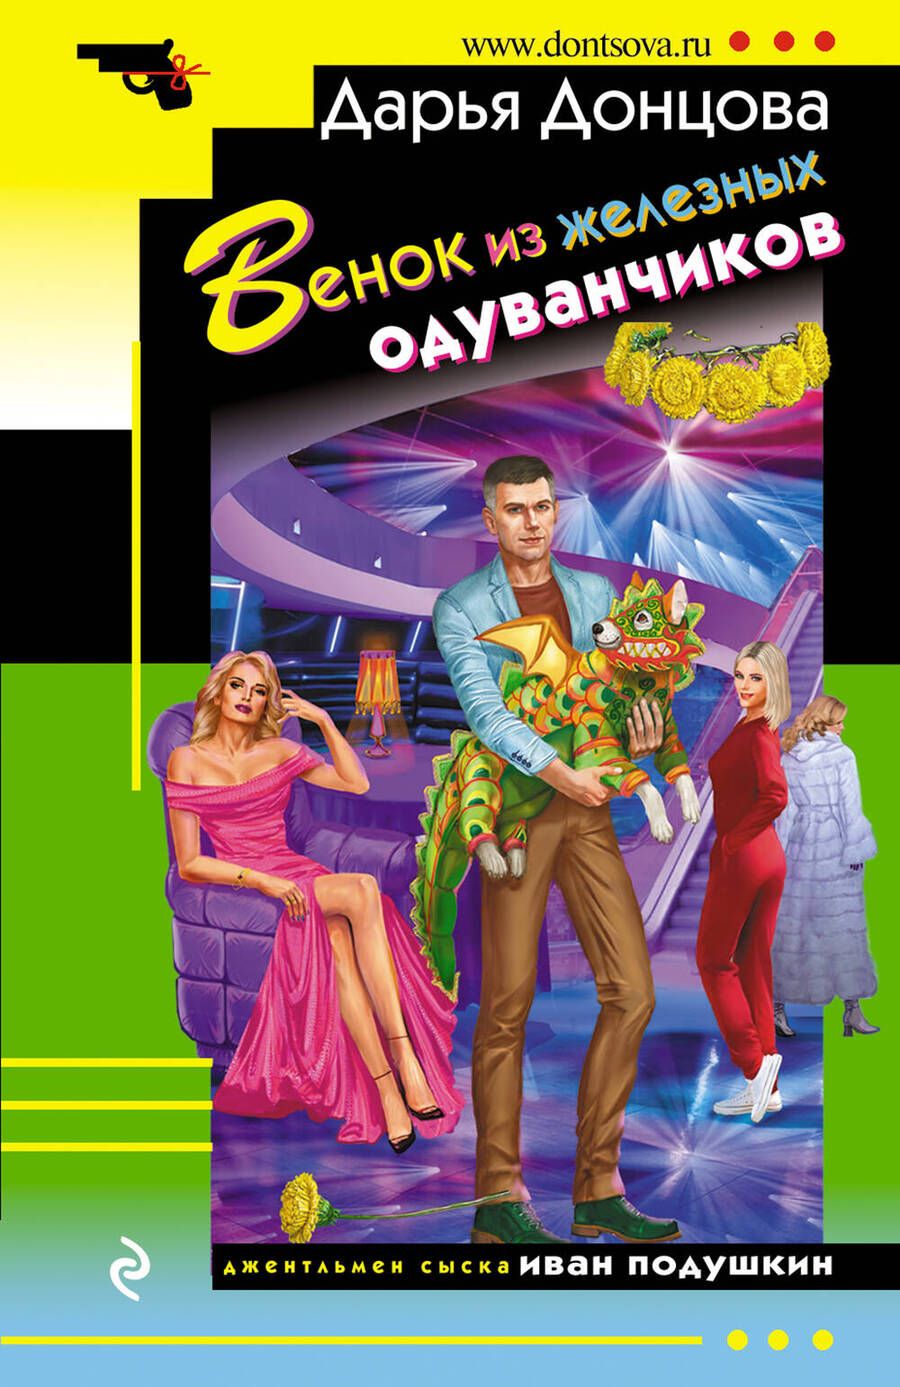 Обложка книги "Донцова: Венок из железных одуванчиков"